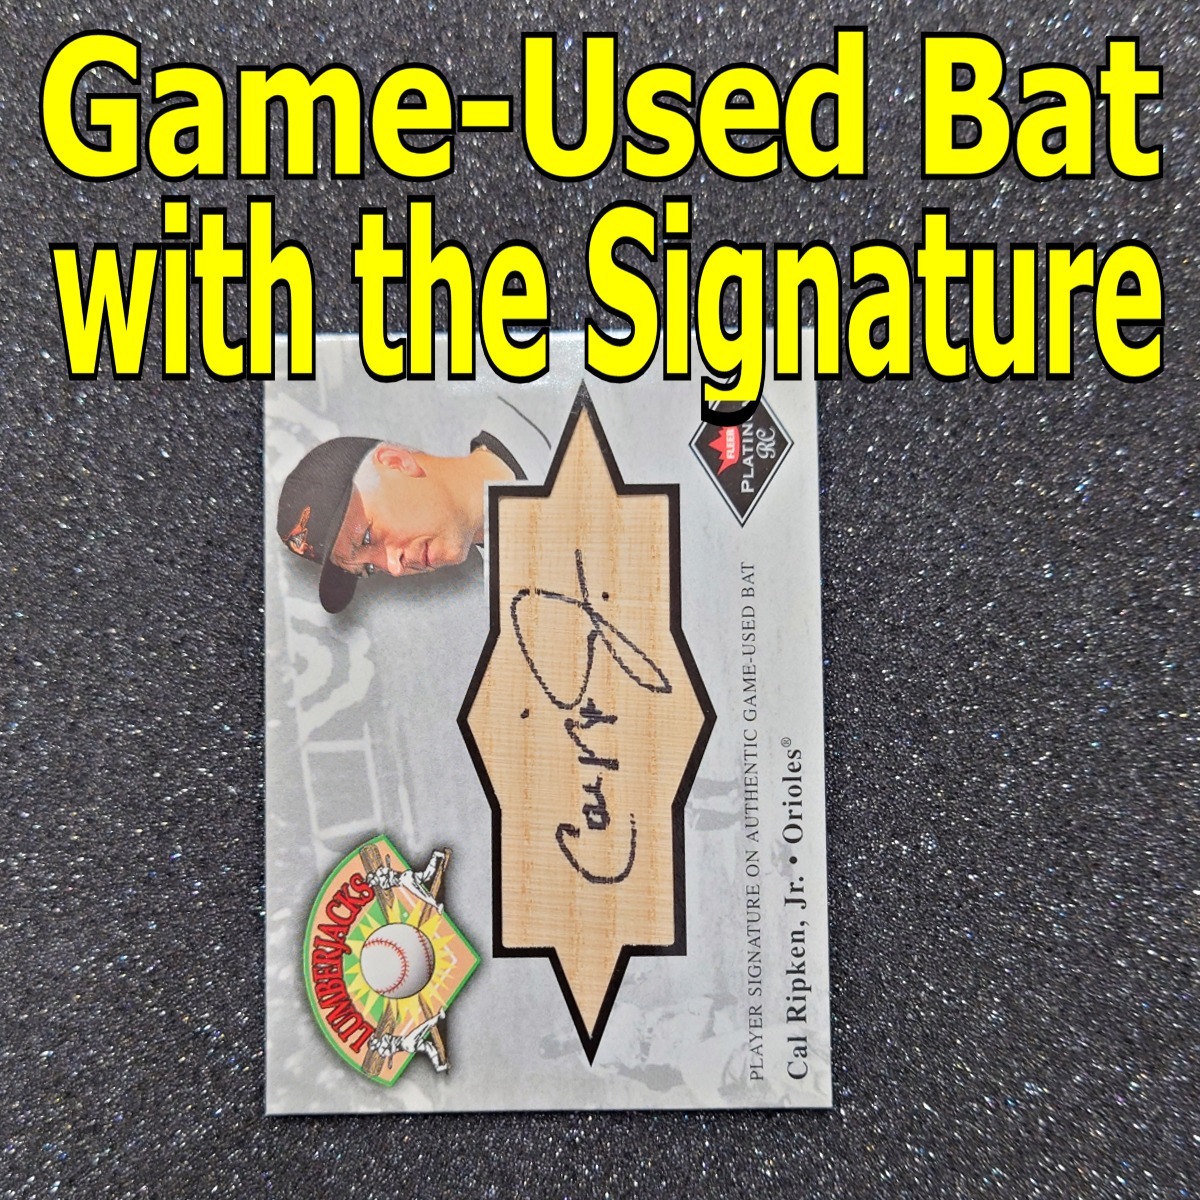 ◆【Bat Auto】Cal Ripken 2001 Fleer Platinum RC Lumberjacks Game-Used Bat with the Signature　◇検索：カル・リプケン 直筆サイン